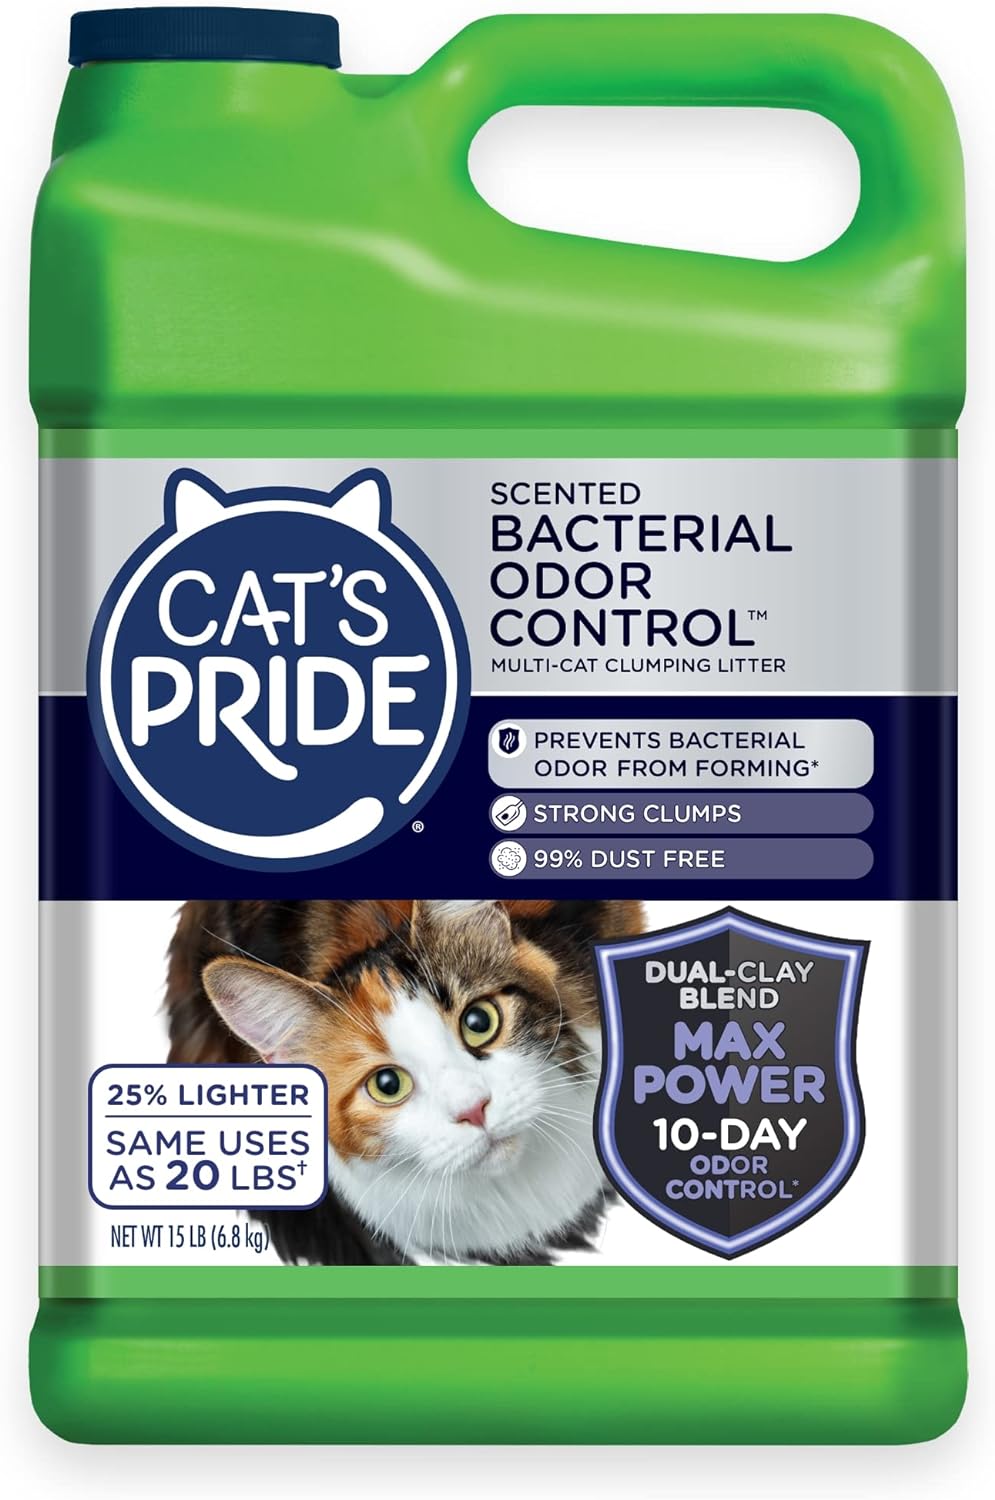 Cat's Pride Max Power: Total Odor Control